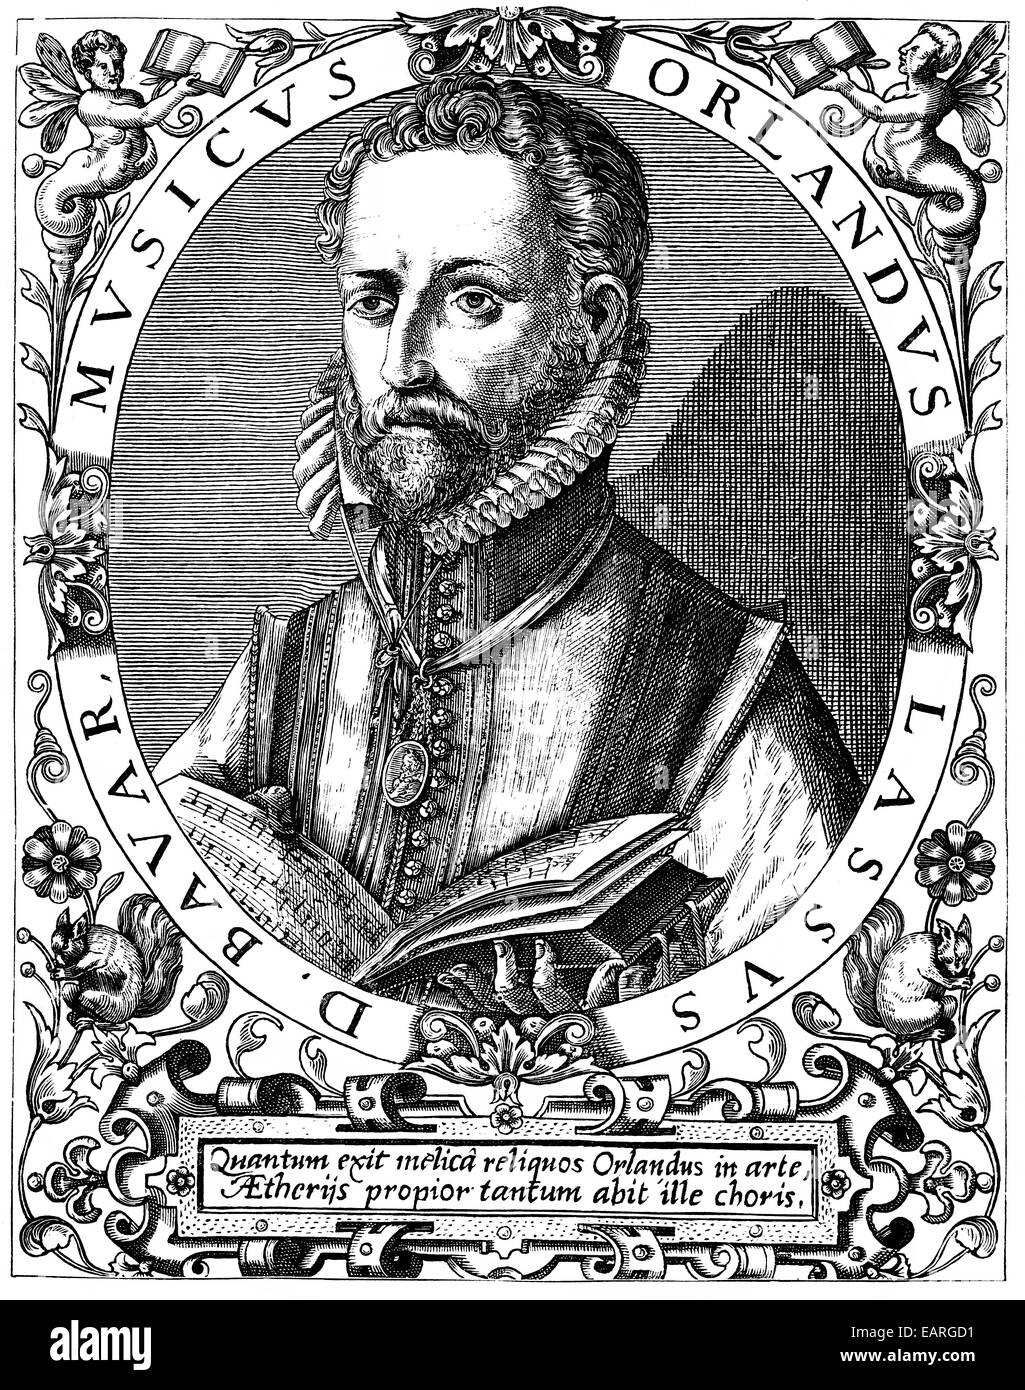 Orlandus Lassus o Orlando di Lasso o Orlande o Roland de Lassus, 1532-1594, compositor del Renacimiento, Retrato von Orlandu Foto de stock